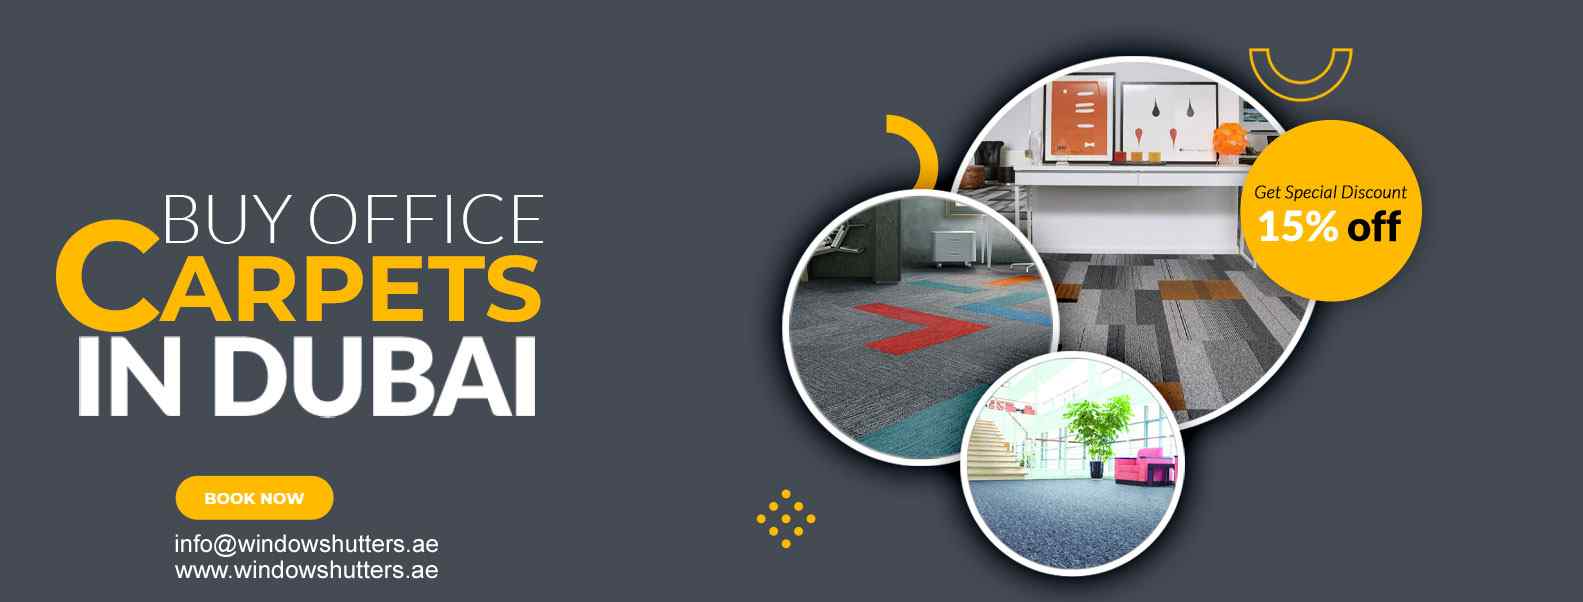 Office-Carpets-UAE